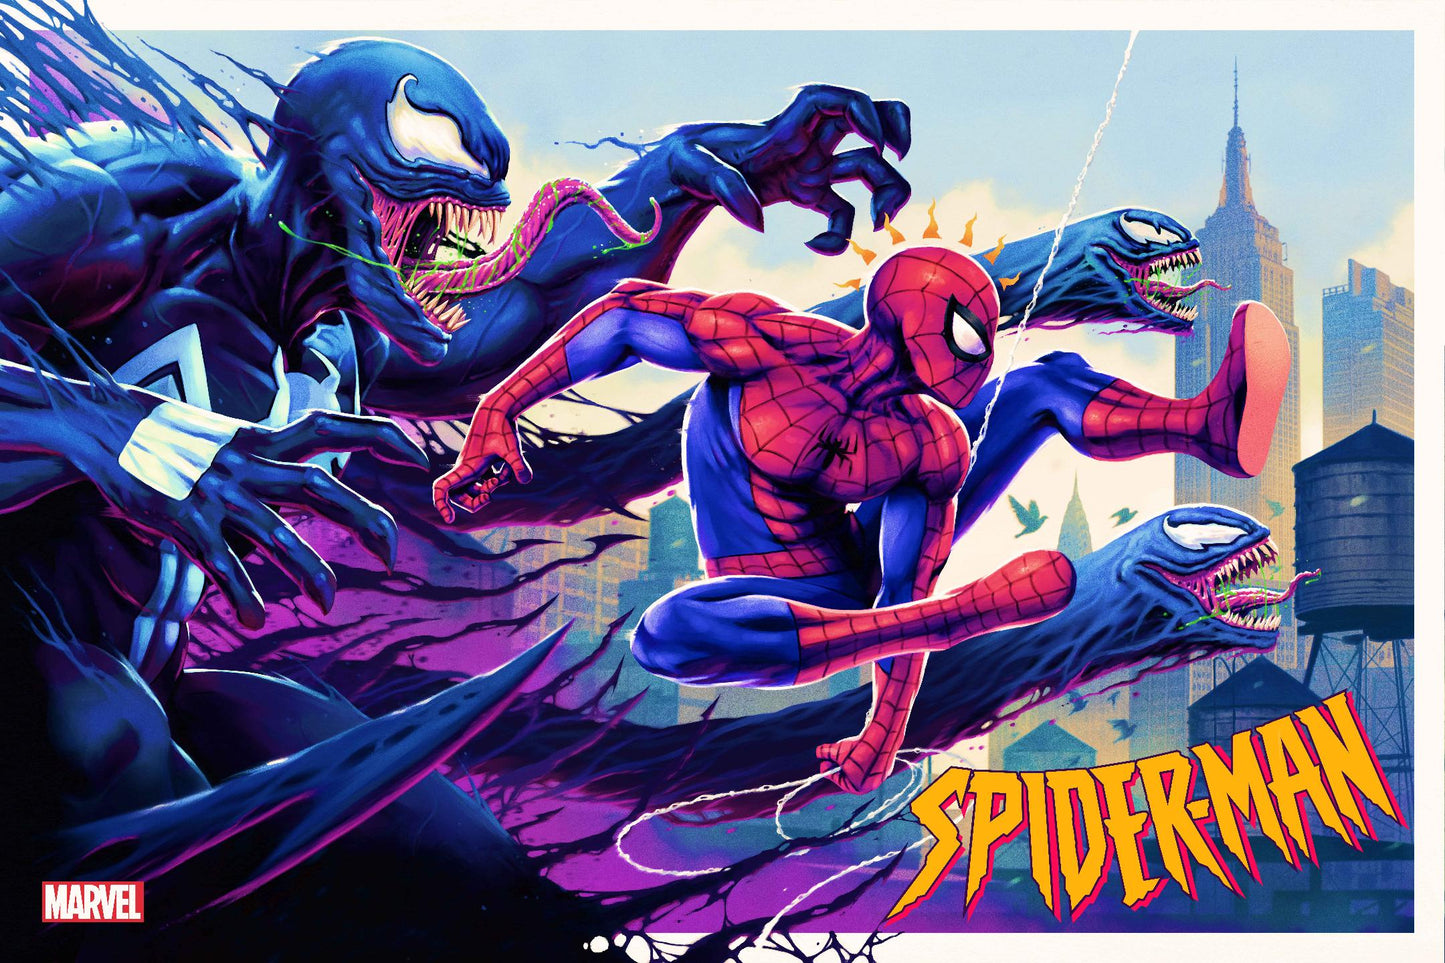 Tom Walker "Spider-Man vs. Venom"